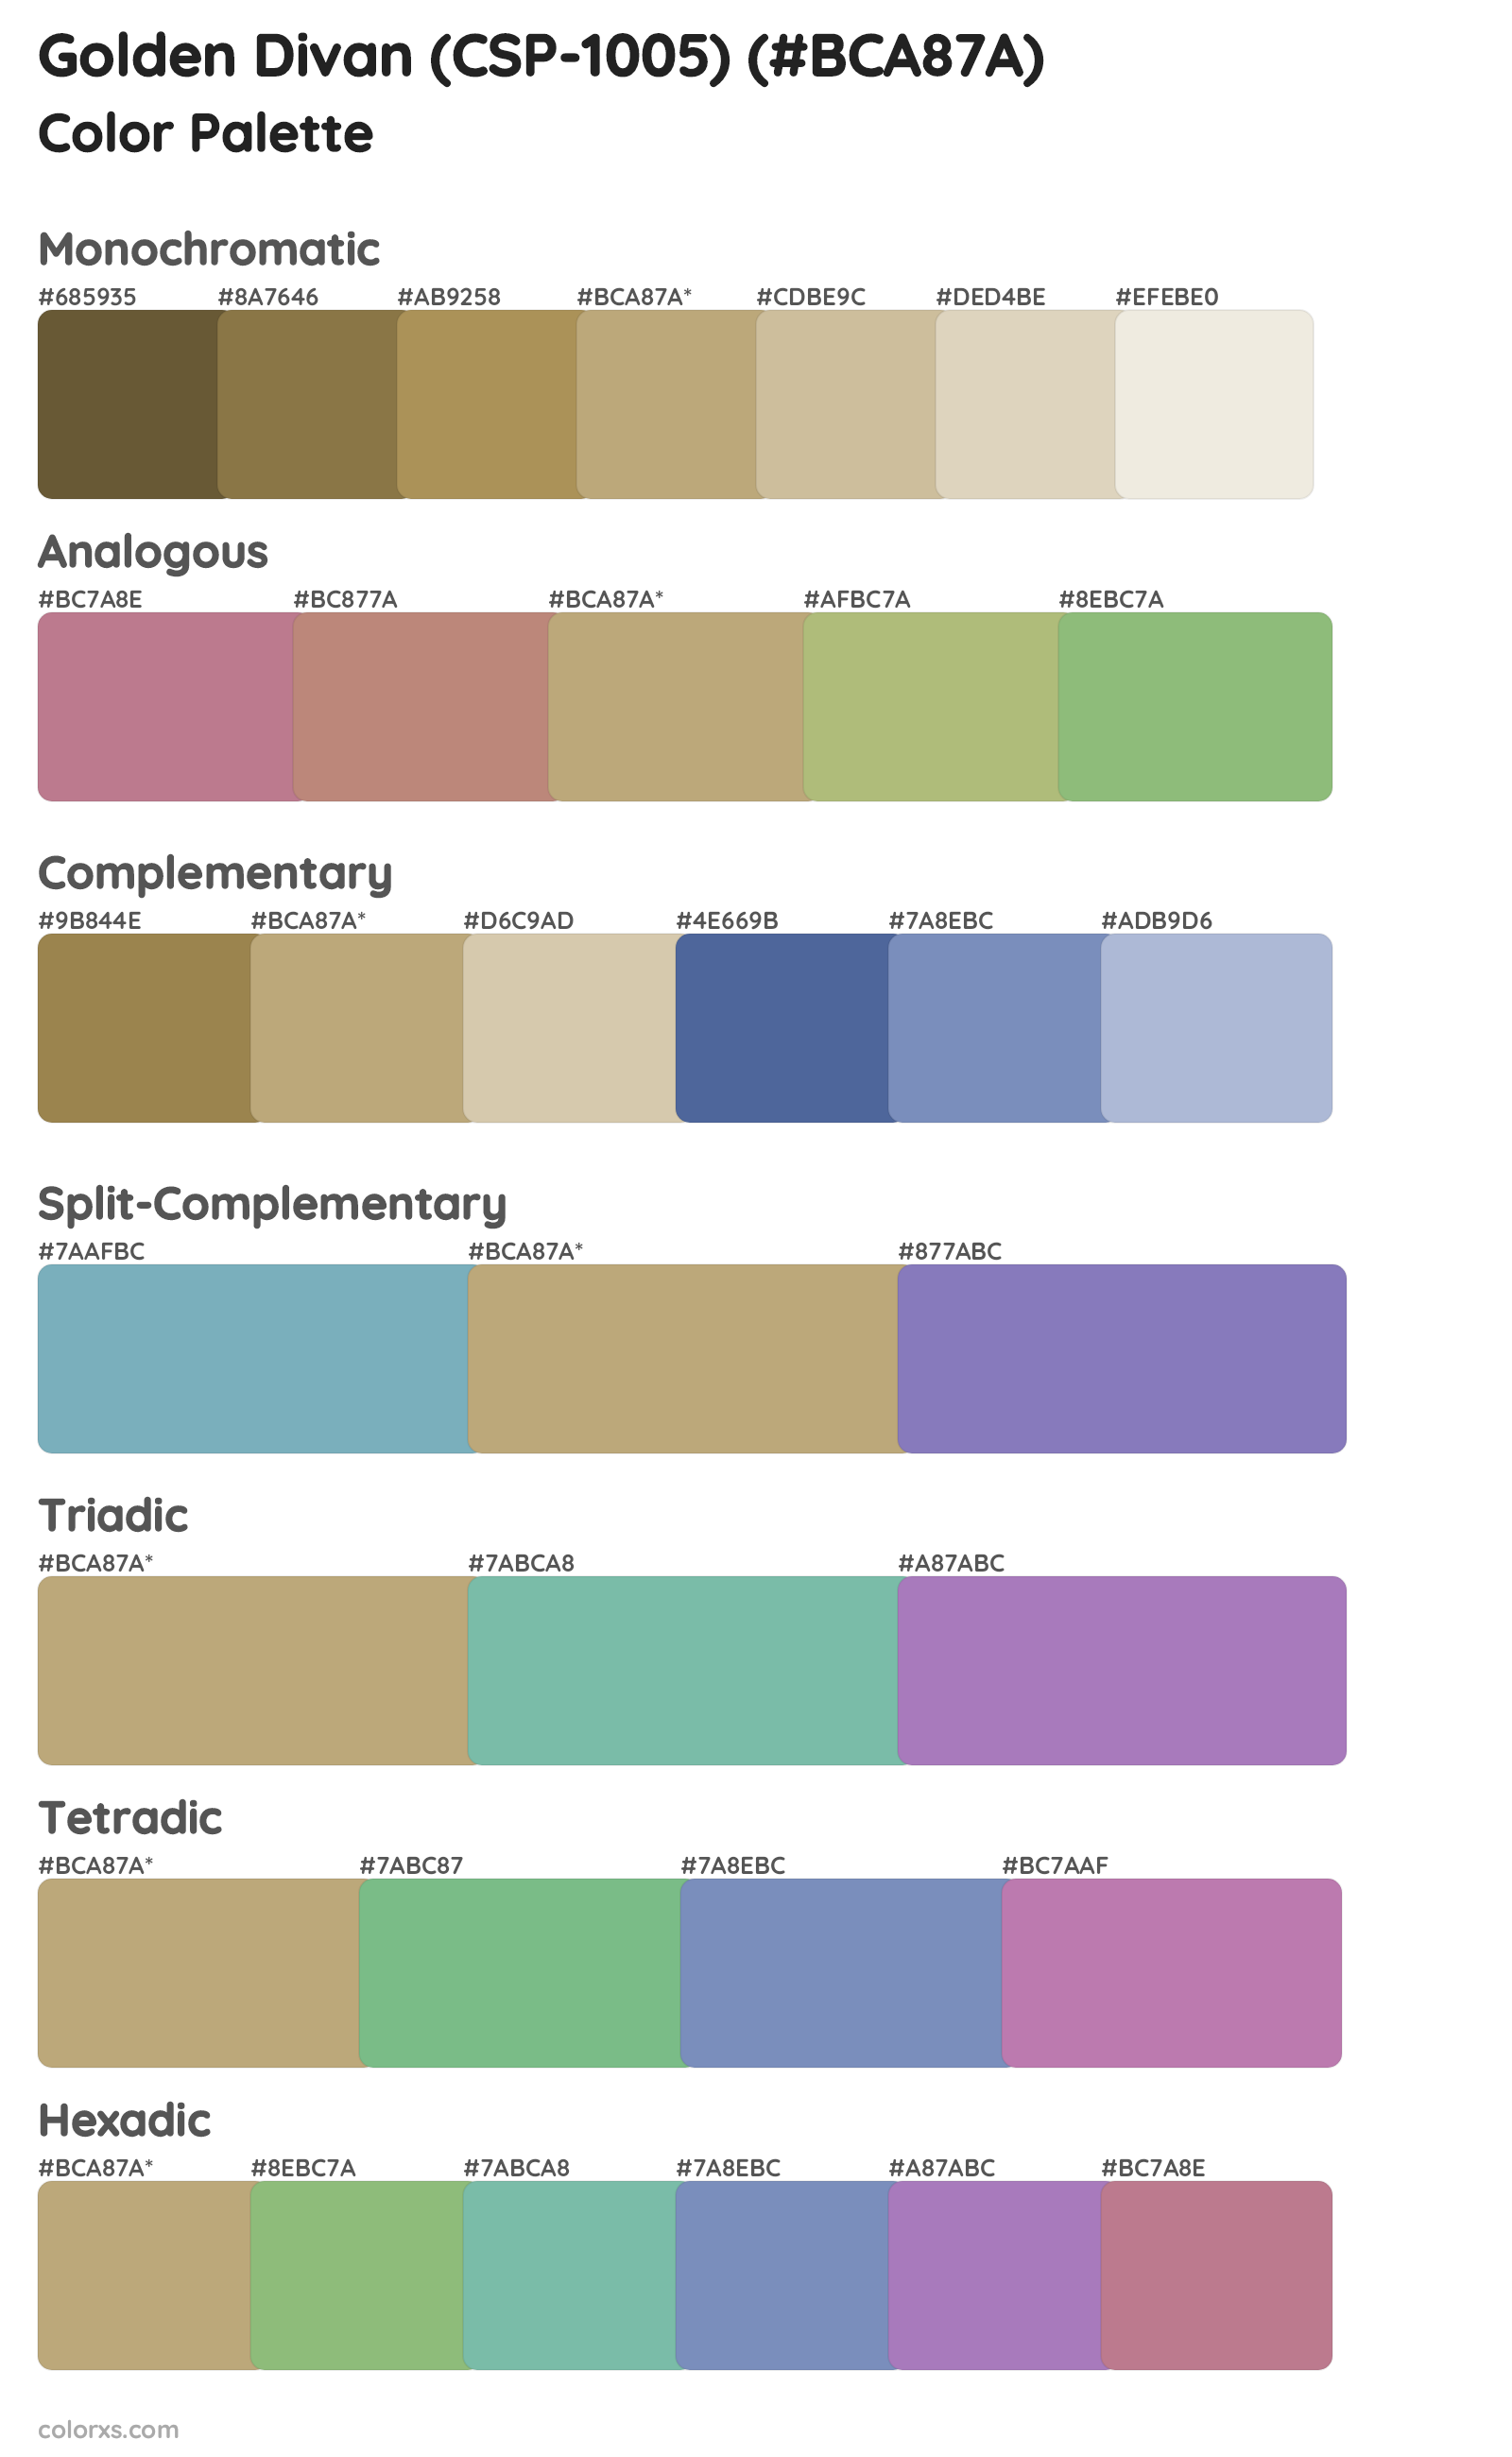 Golden Divan (CSP-1005) Color Scheme Palettes